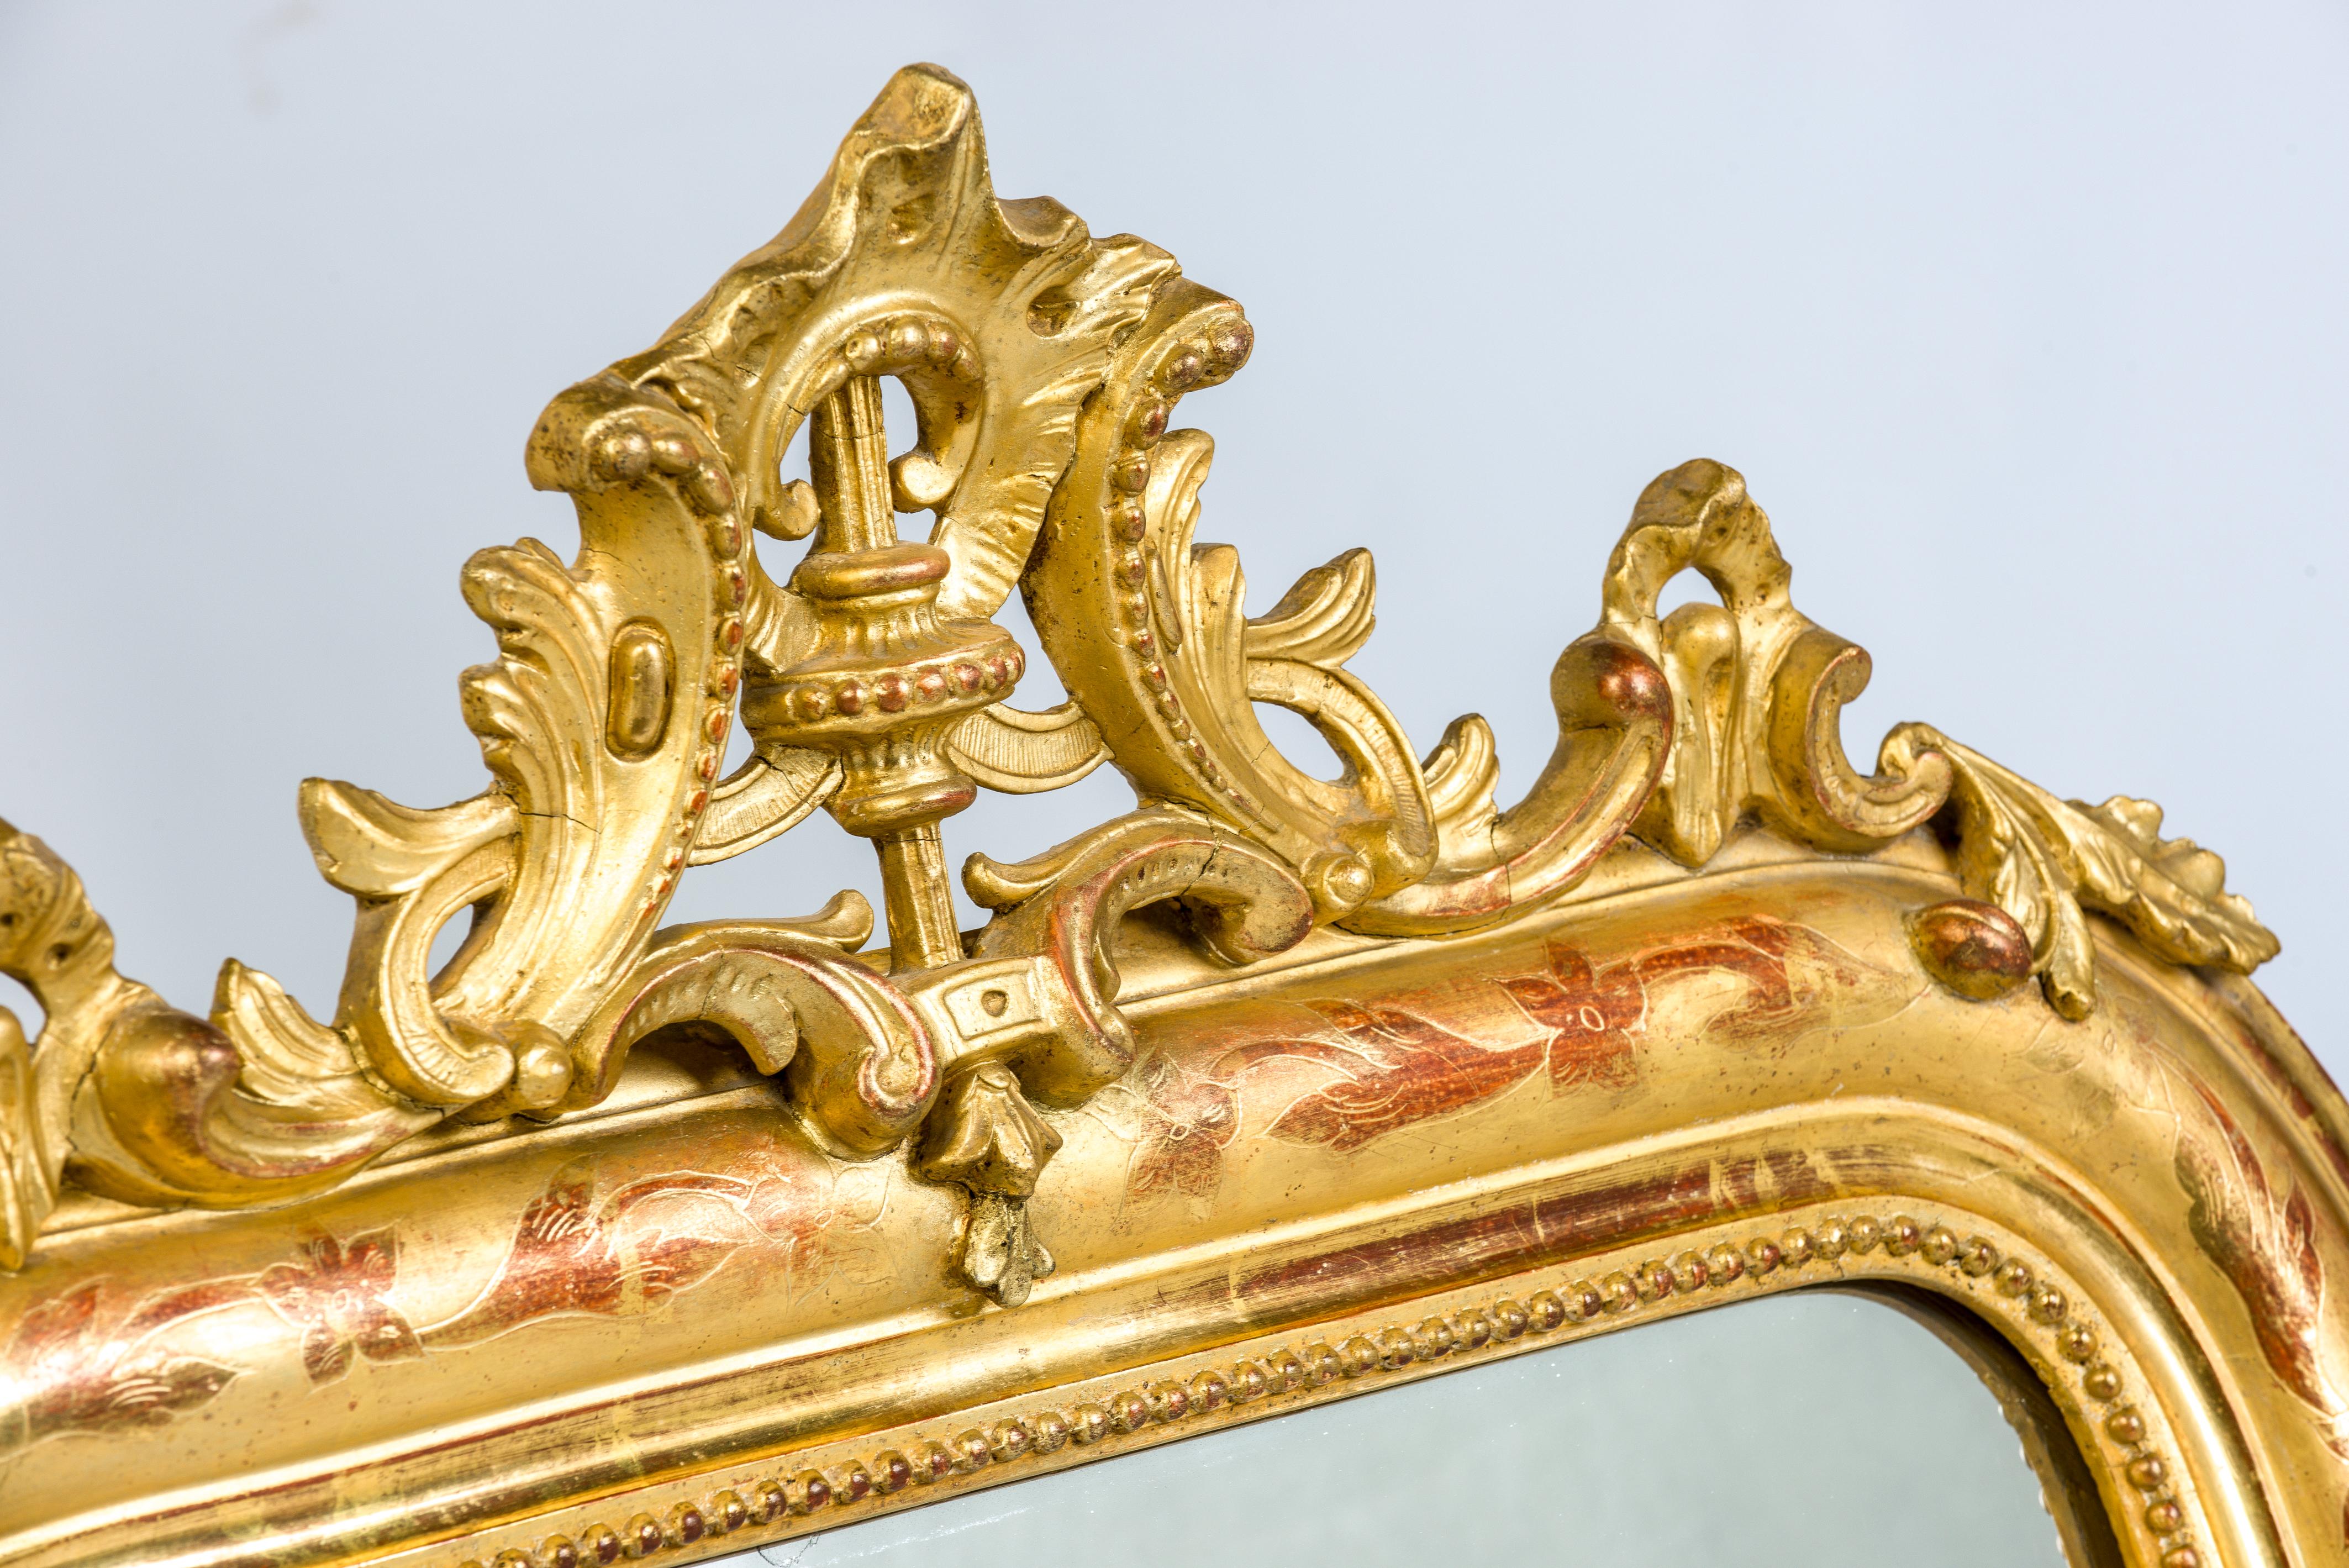 Ce magnifique miroir Louis Philippe doré à la feuille d'or présente une crête ornée sur le dessus.
Les coins supérieurs sont incurvés, comme c'est le cas pour Louis Philippe.
Le cadre et le cimier sont dorés à la feuille d'or. La 